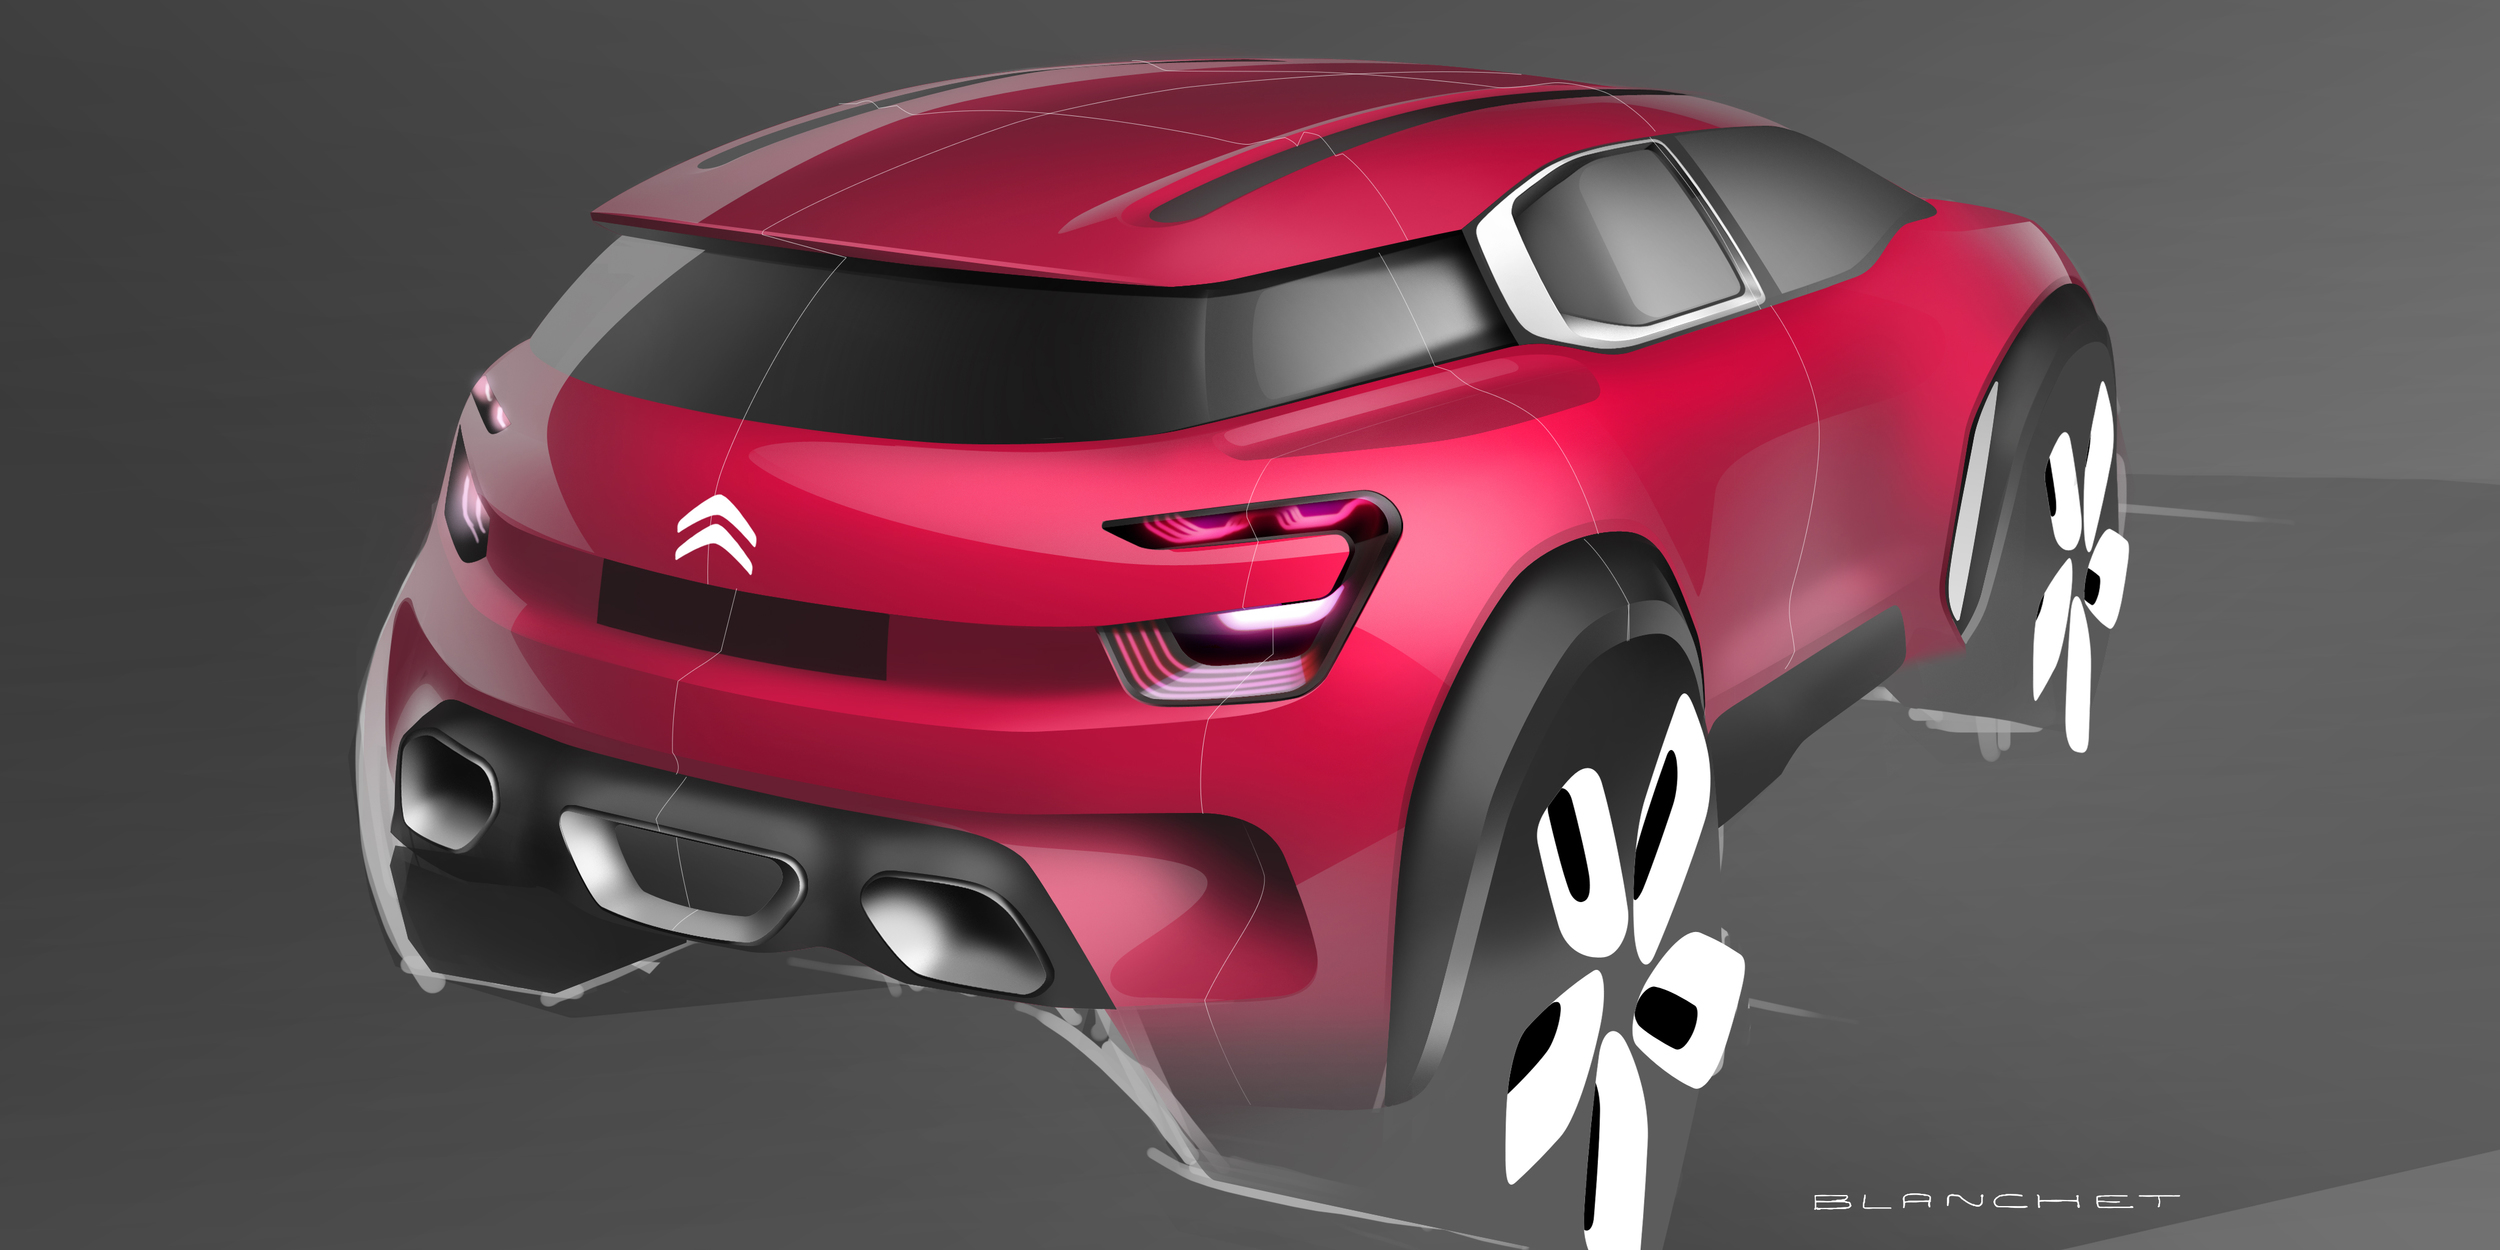 Citroen Aircross Concept, 2015 - Design Sketch